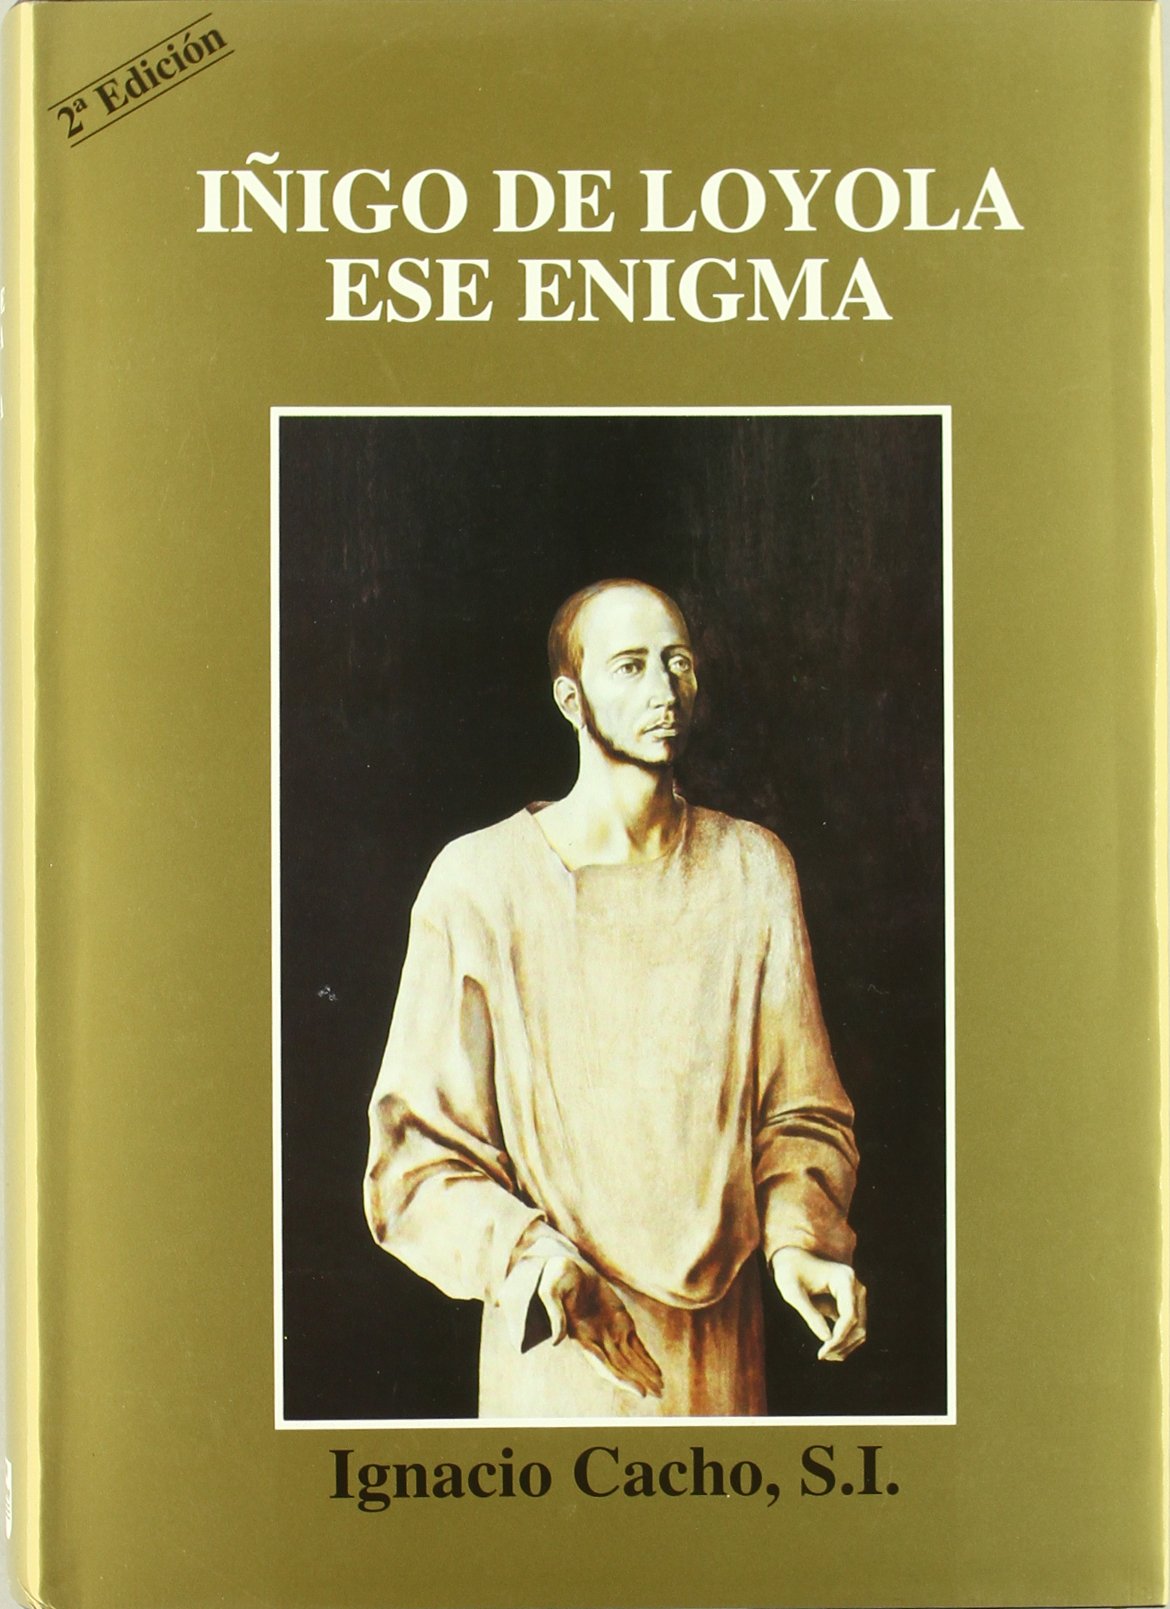 Imagen de portada del libro Íñigo de Loyola, ese enigma